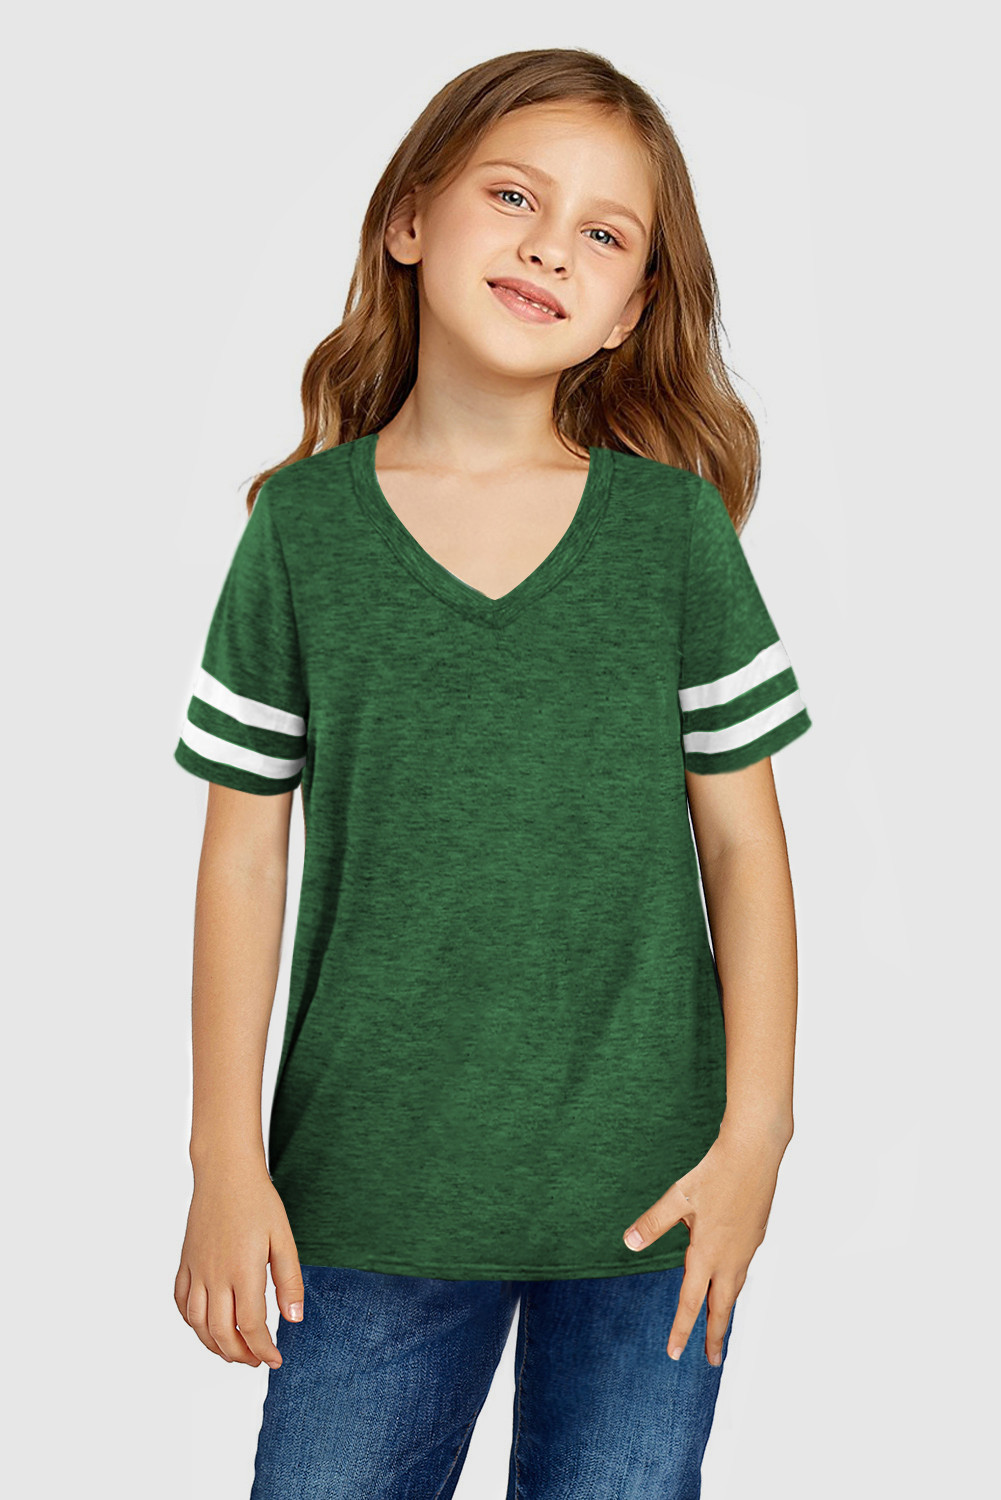 绿色条纹短袖女童上衣 TZ25489